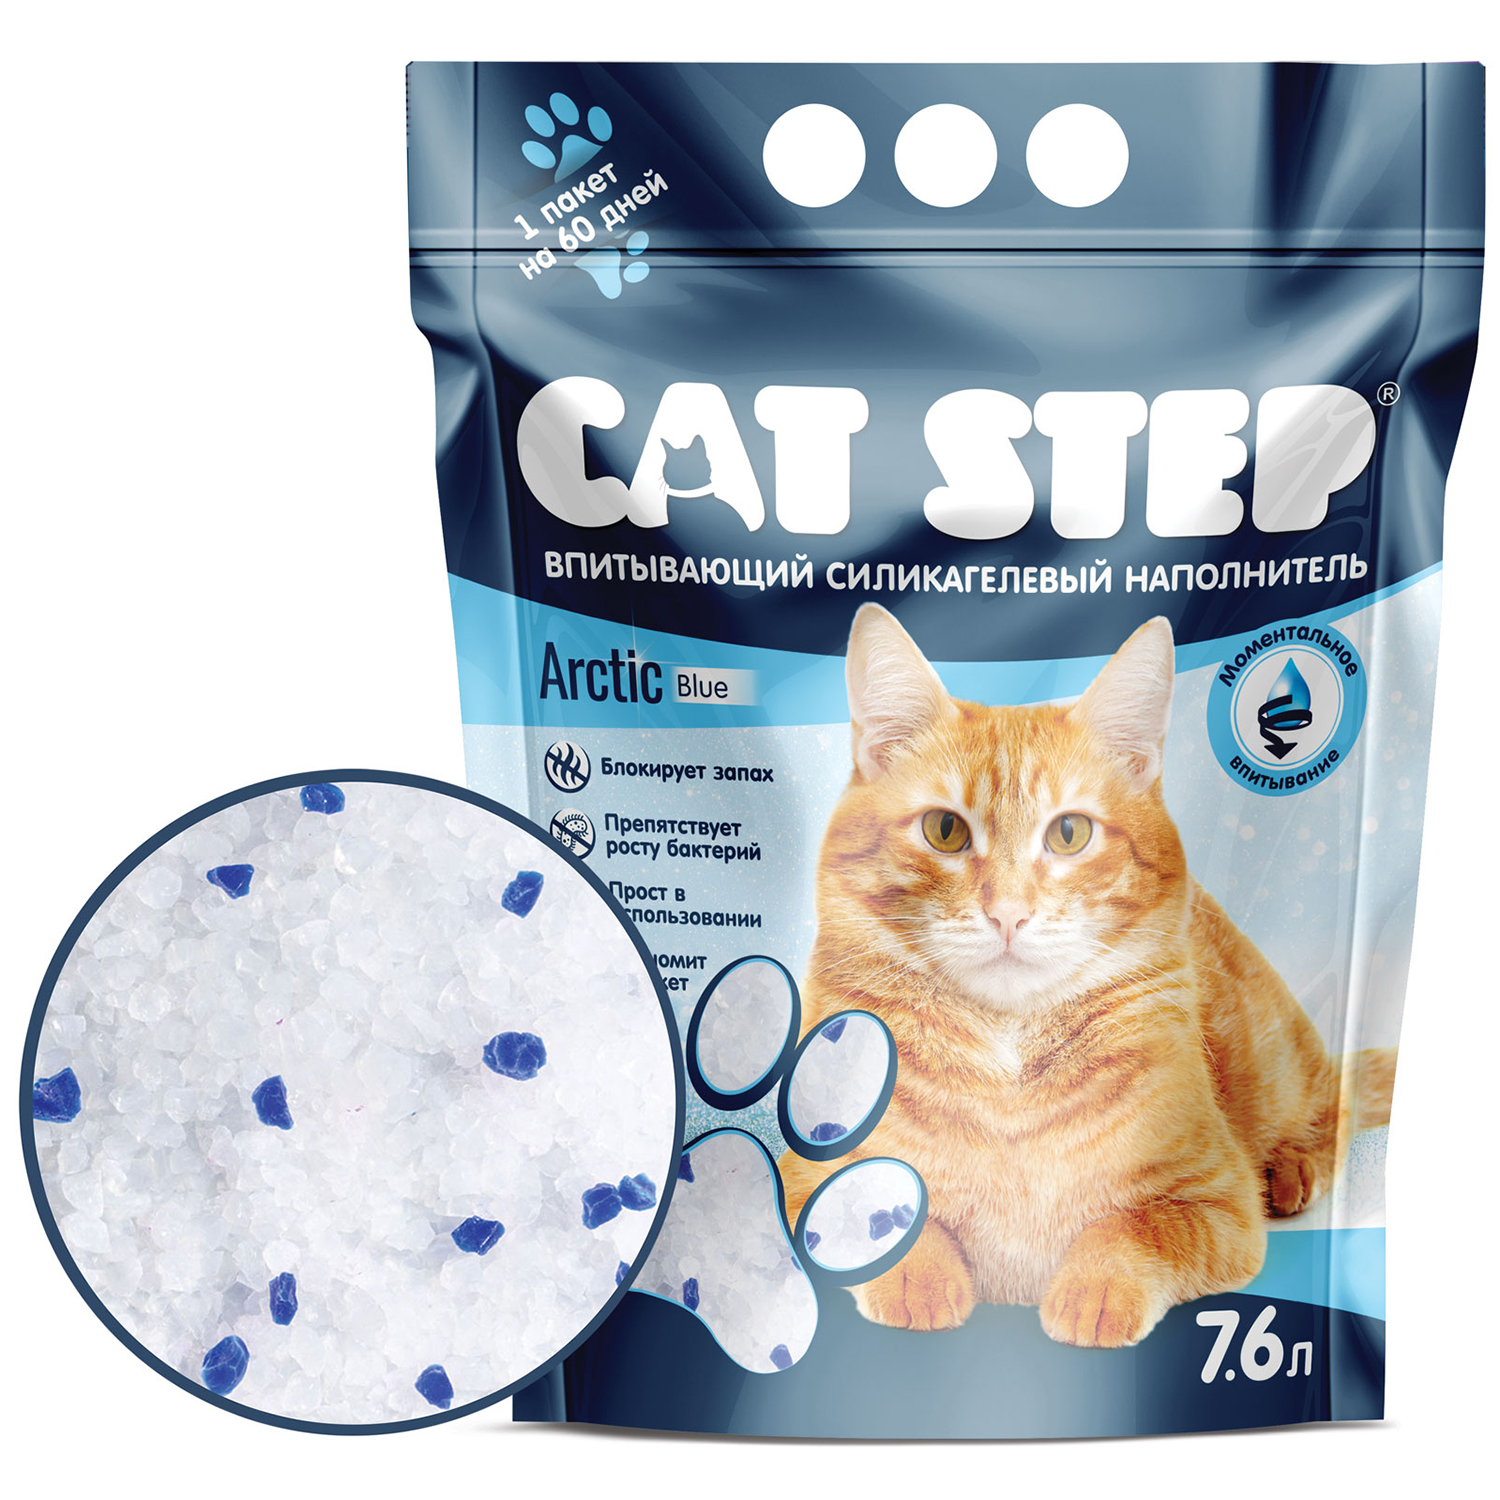 Наполнитель для кошек Cat Step Arctic Blue силикагелевый 7.6л - фото 1